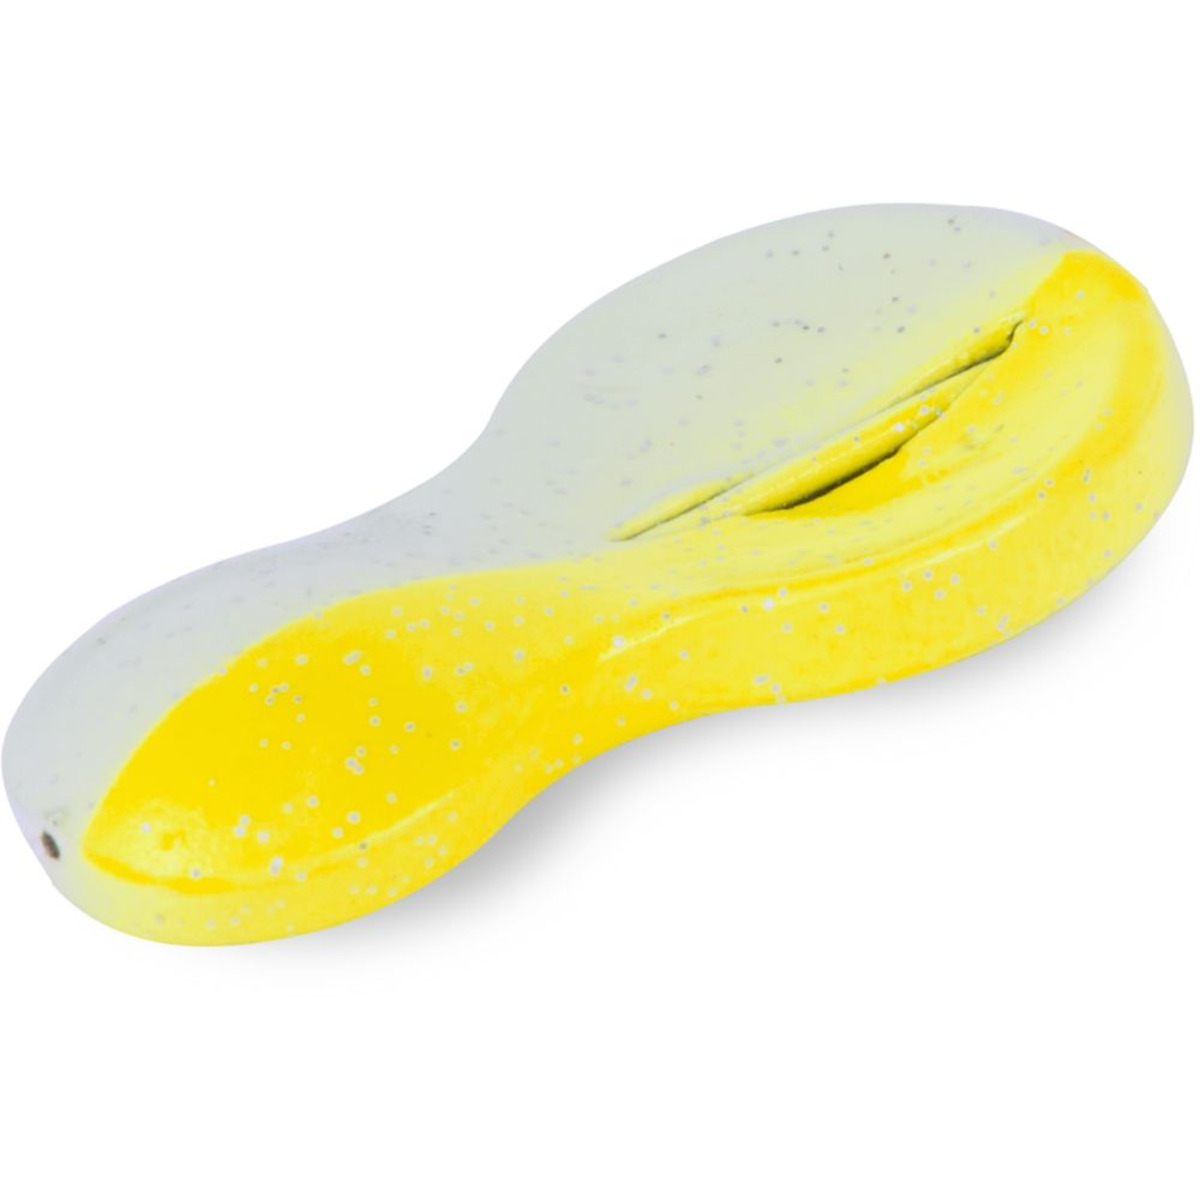 Zebco Z-sea Flatty Teaser Inline, Lead Free - 50 g - yellow/glow in the dark